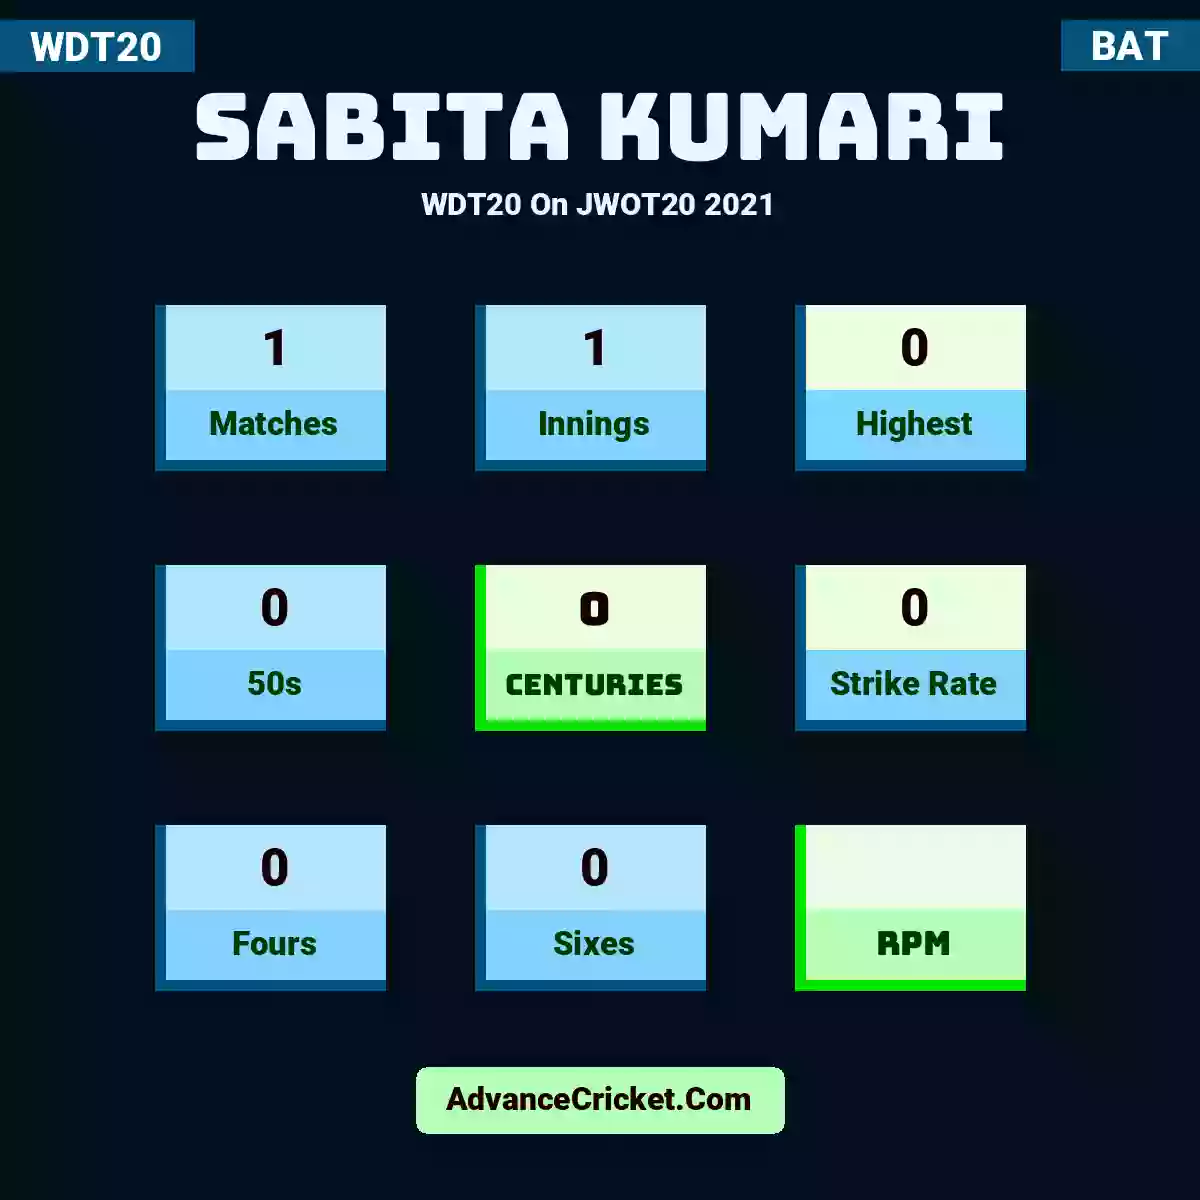 Sabita Kumari WDT20  On JWOT20 2021, Sabita Kumari played 1 matches, scored 0 runs as highest, 0 half-centuries, and 0 centuries, with a strike rate of 0. S.Kumari hit 0 fours and 0 sixes.